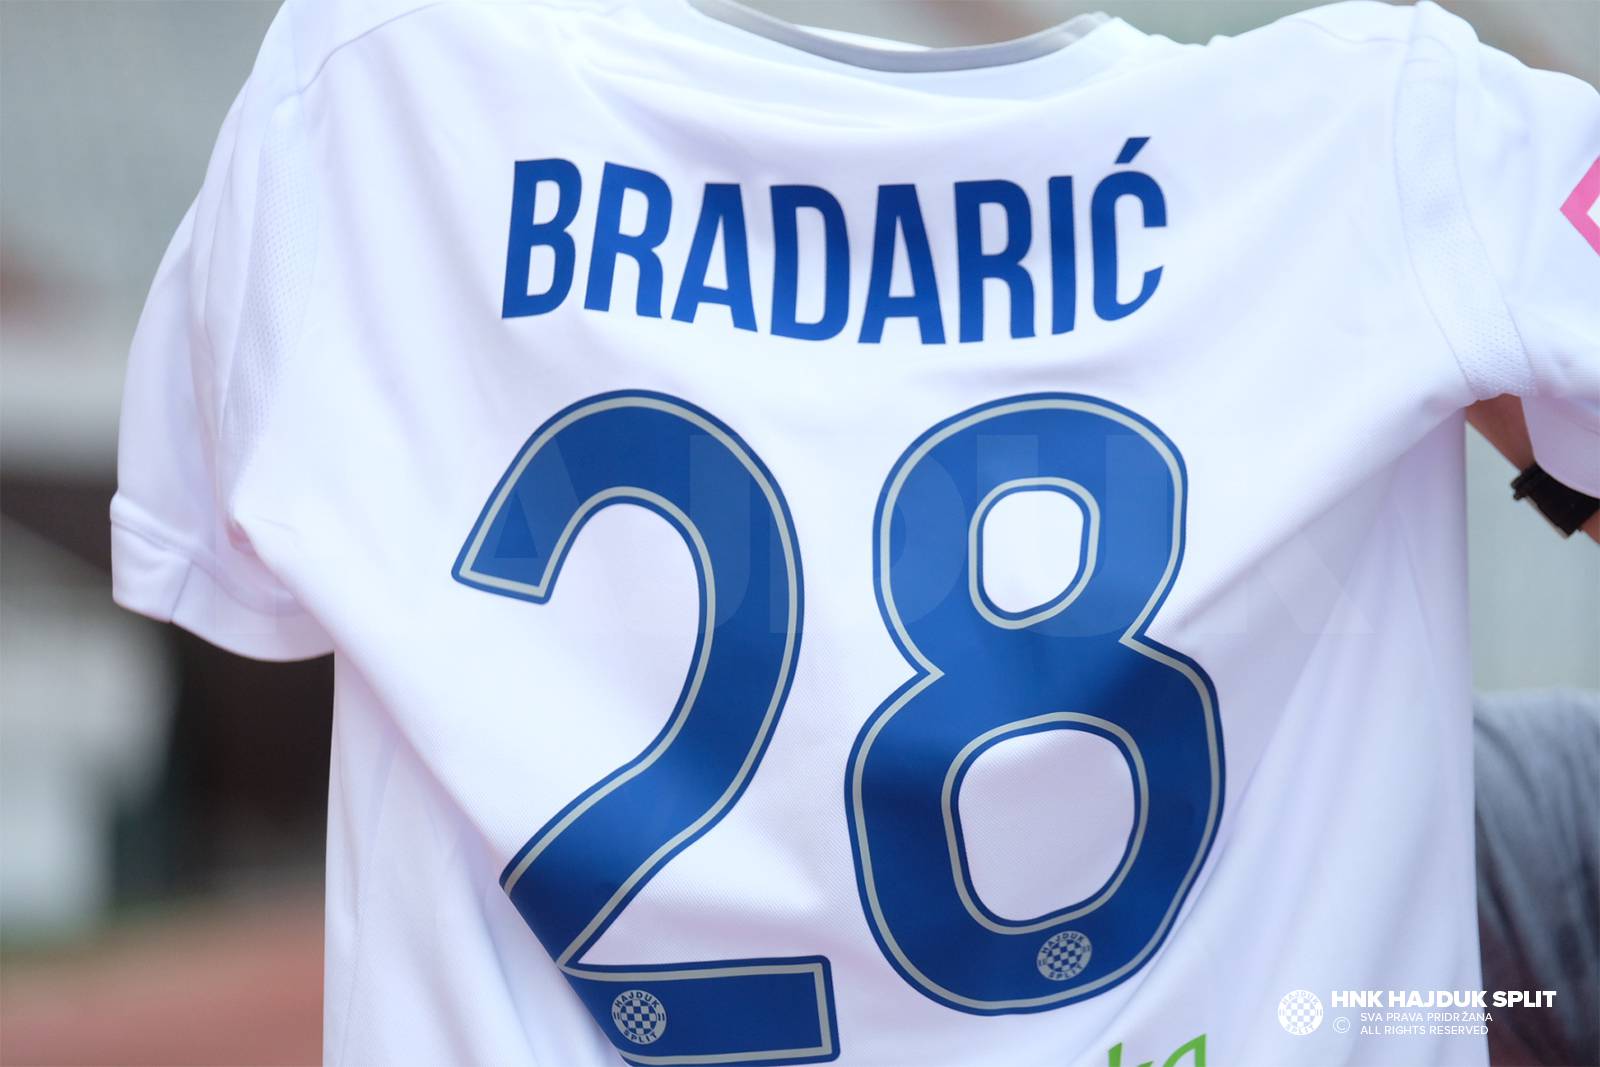 Zvijezda Hajdukovog ljeta, Filip Bradarić, priključio se treningu